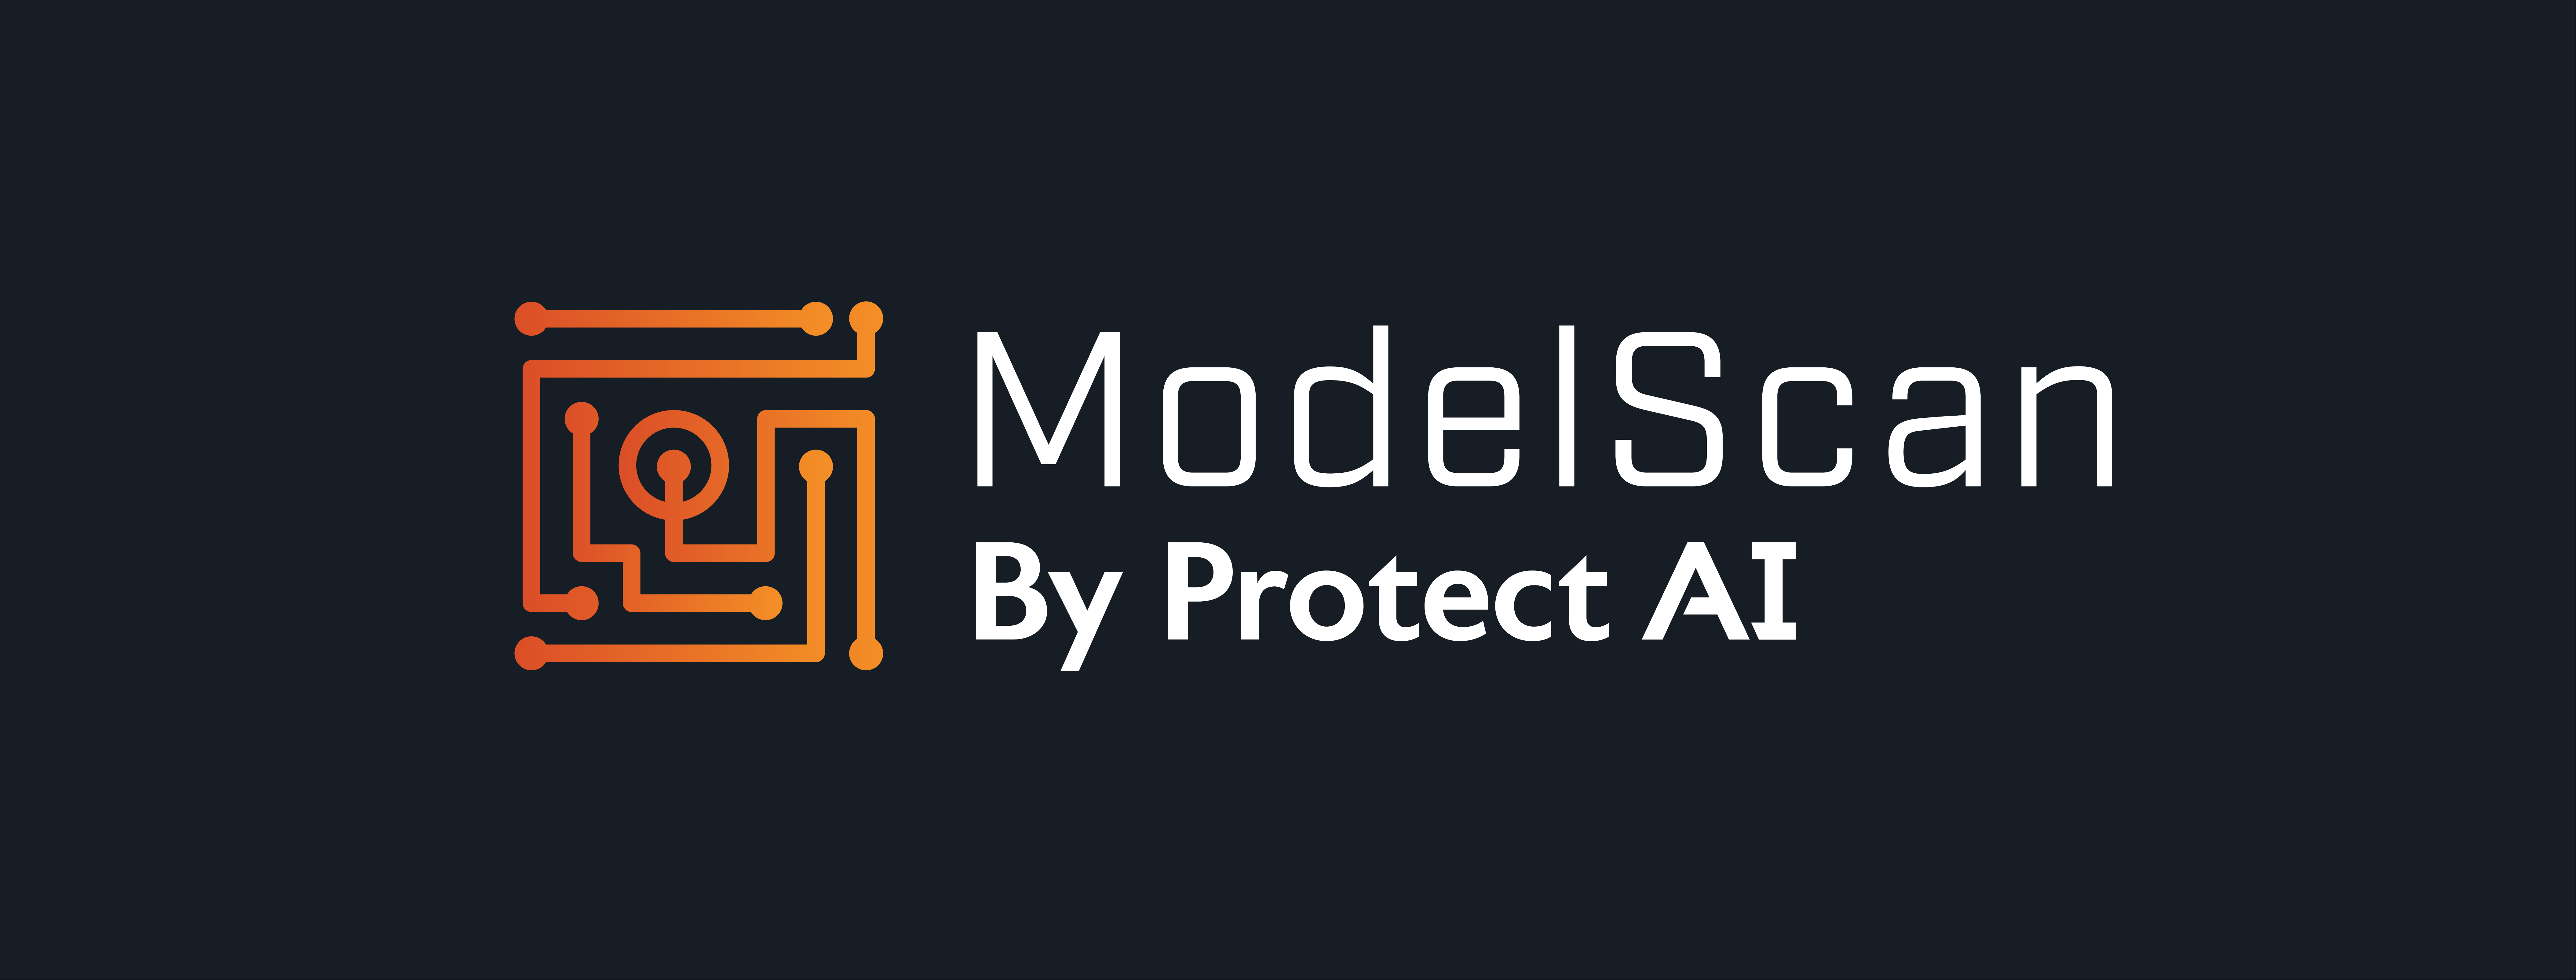 ModelScan Banner